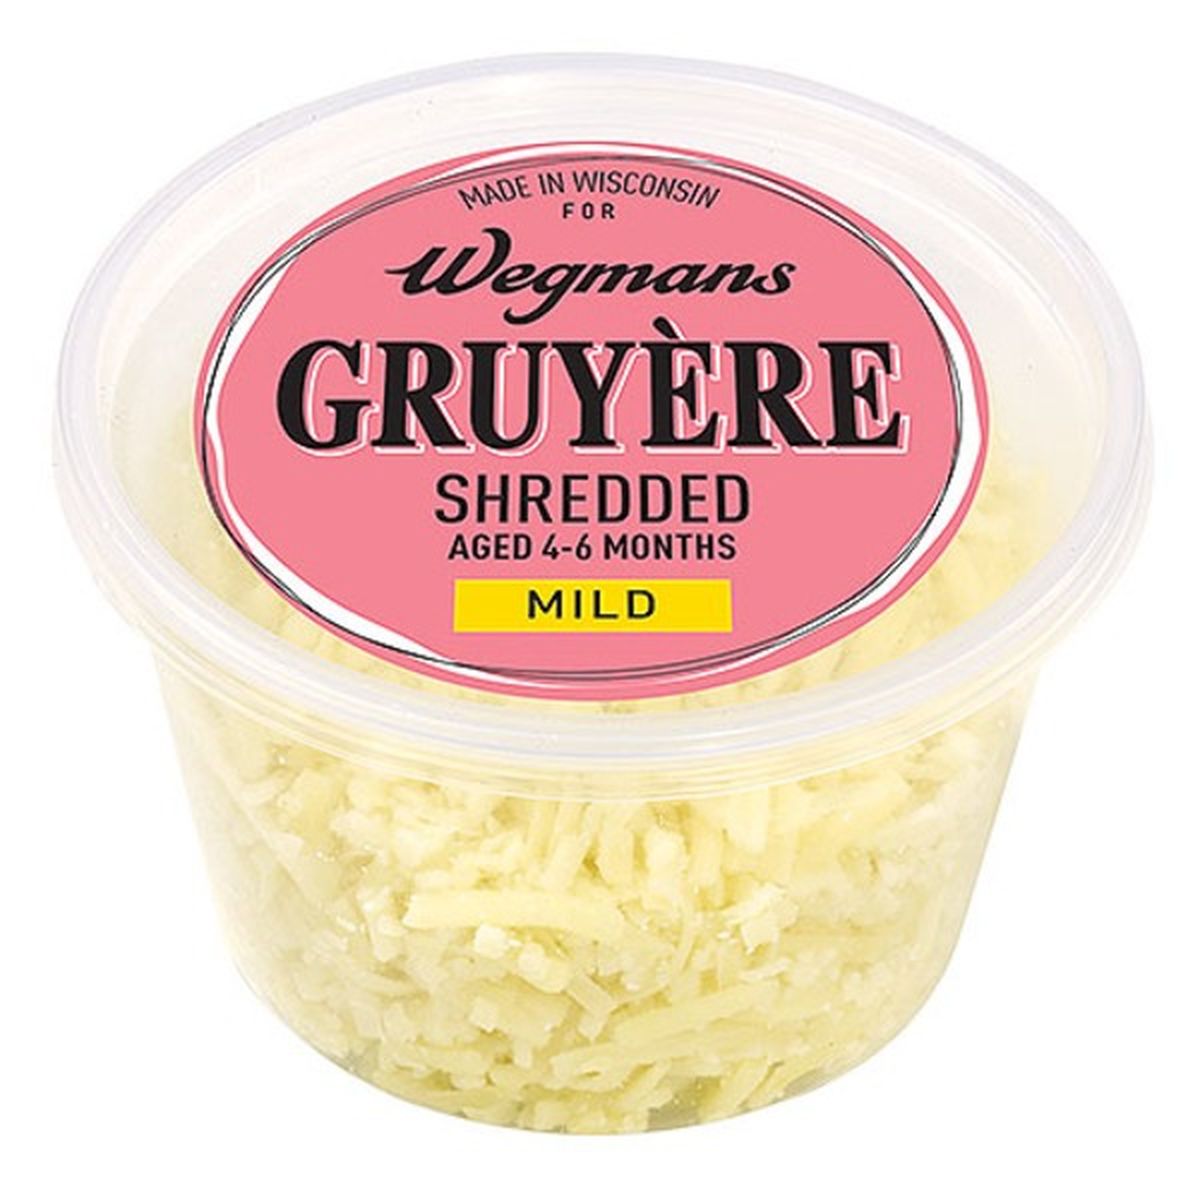 Calories in Wegmans Gruyere Cheese AGed 4-6 Months, Shredded Mild